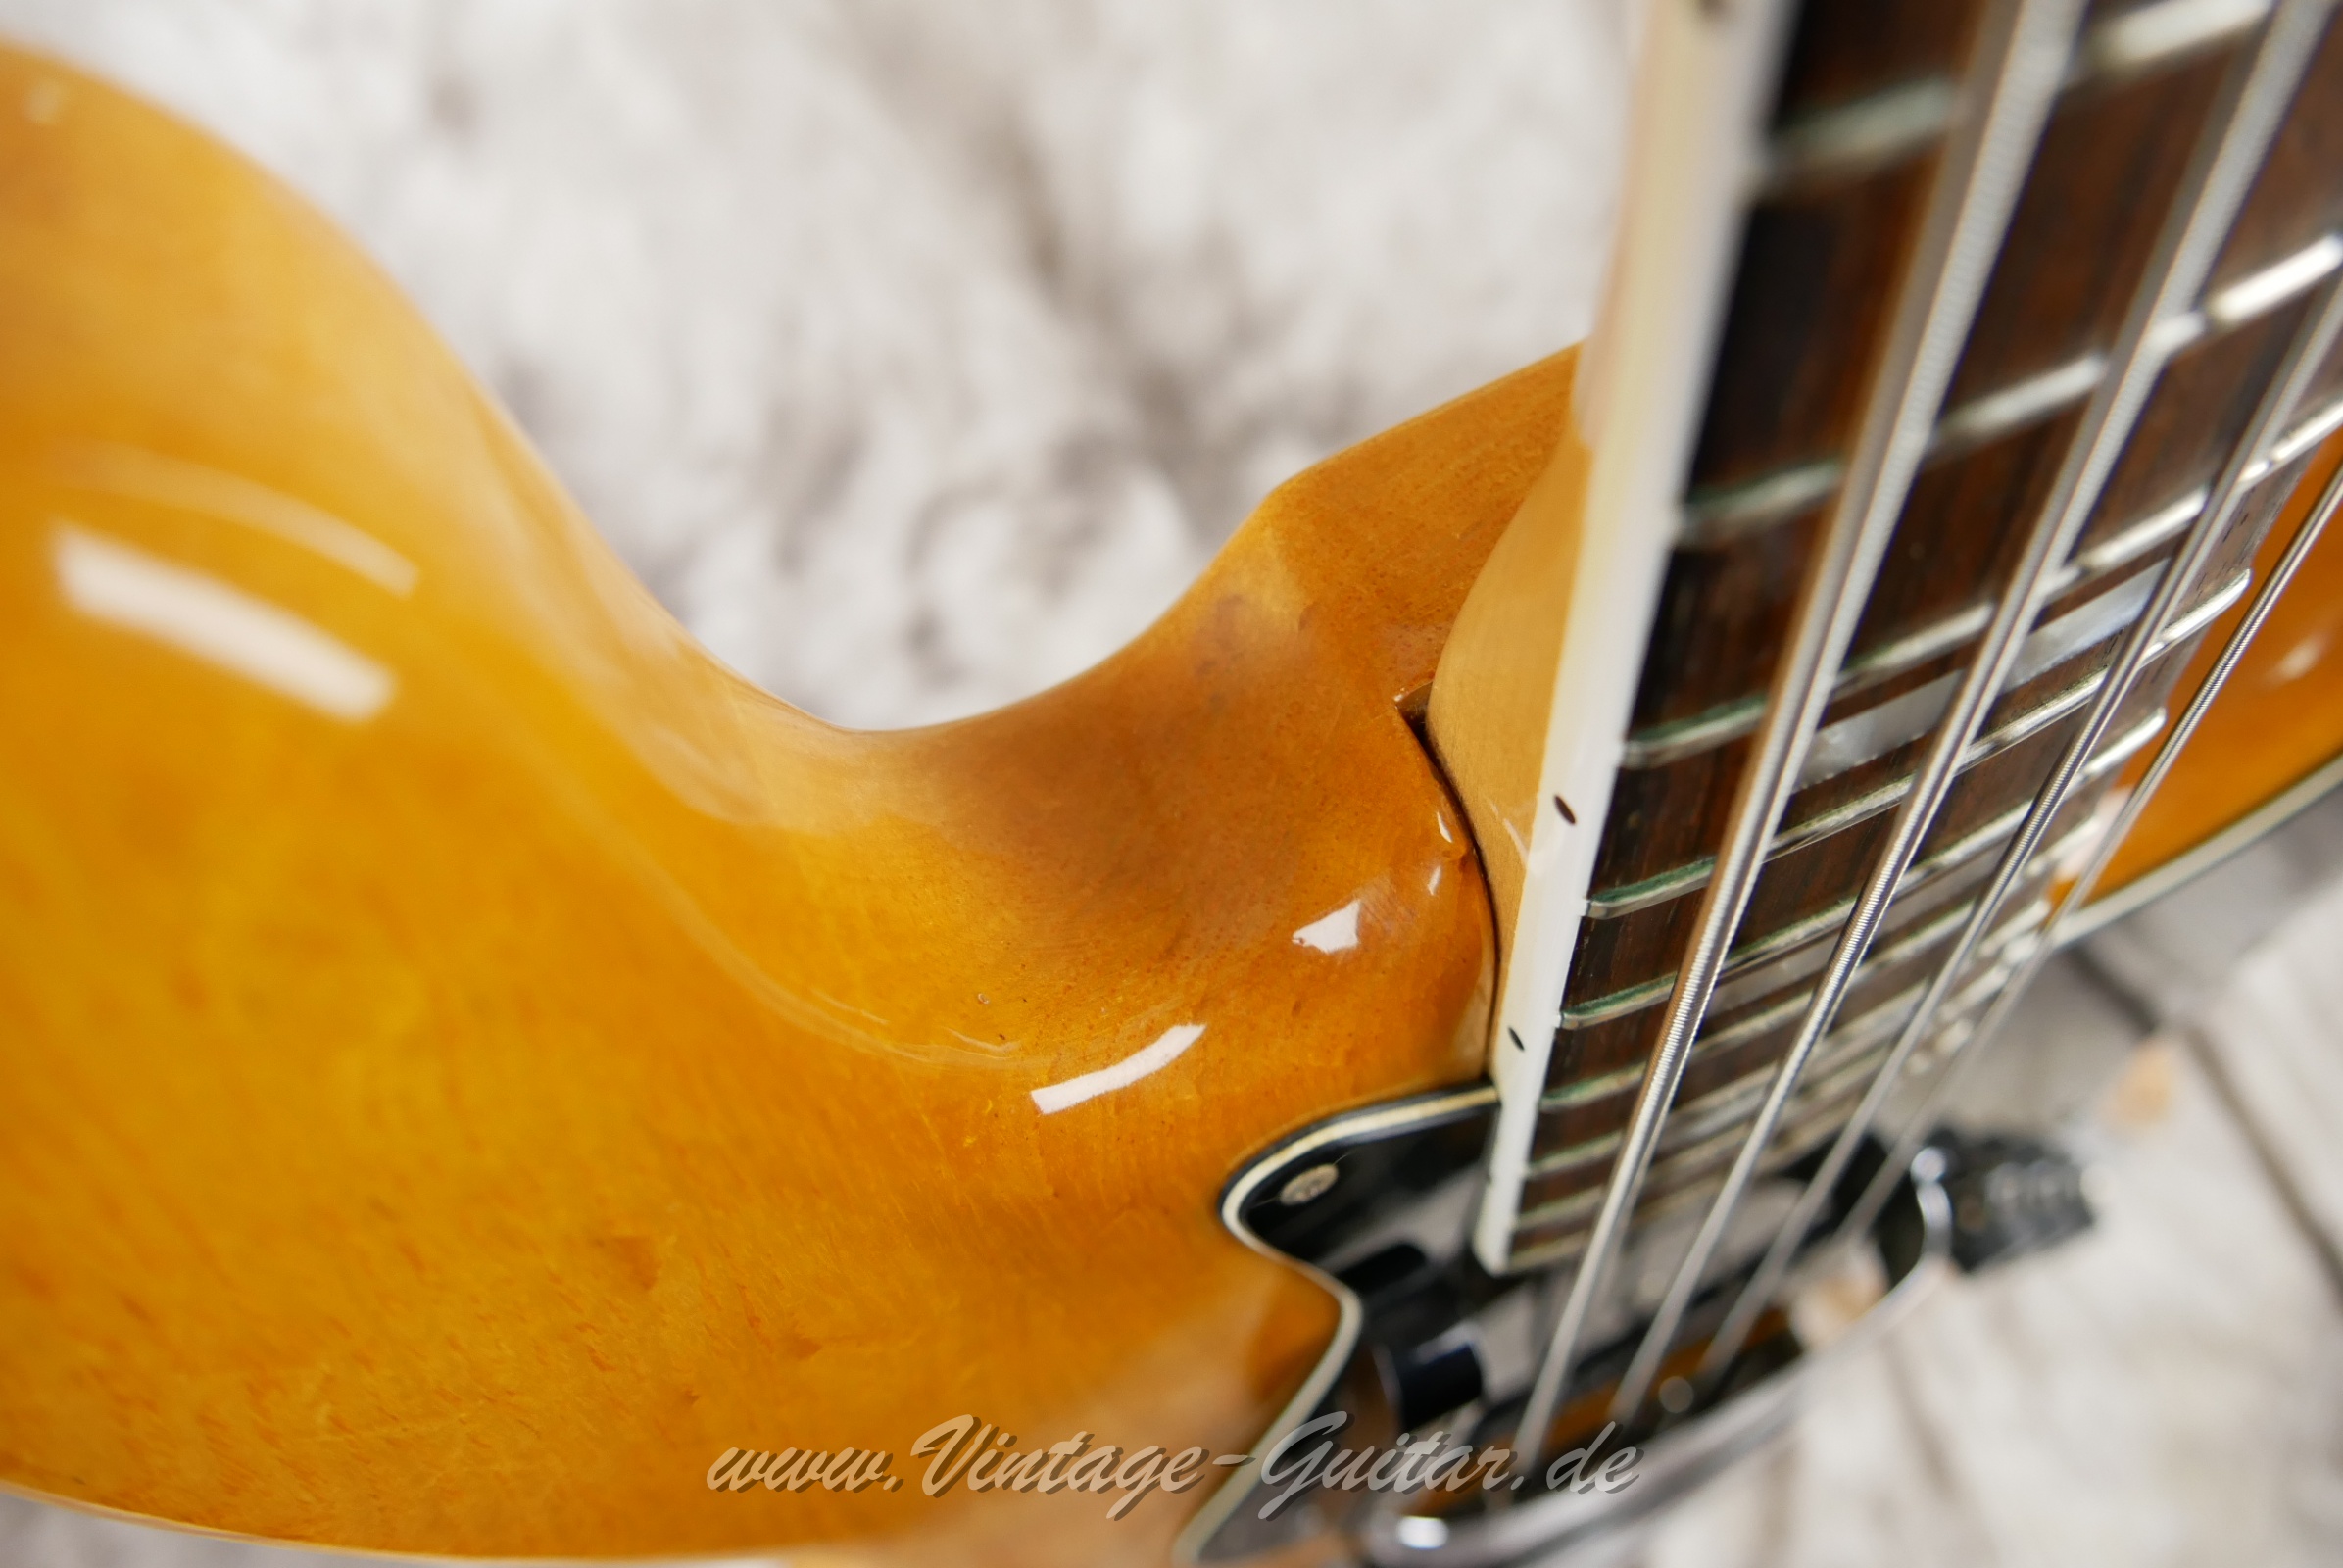 Fender-Jazz-Bass-USA-1979-natural-013.jpg